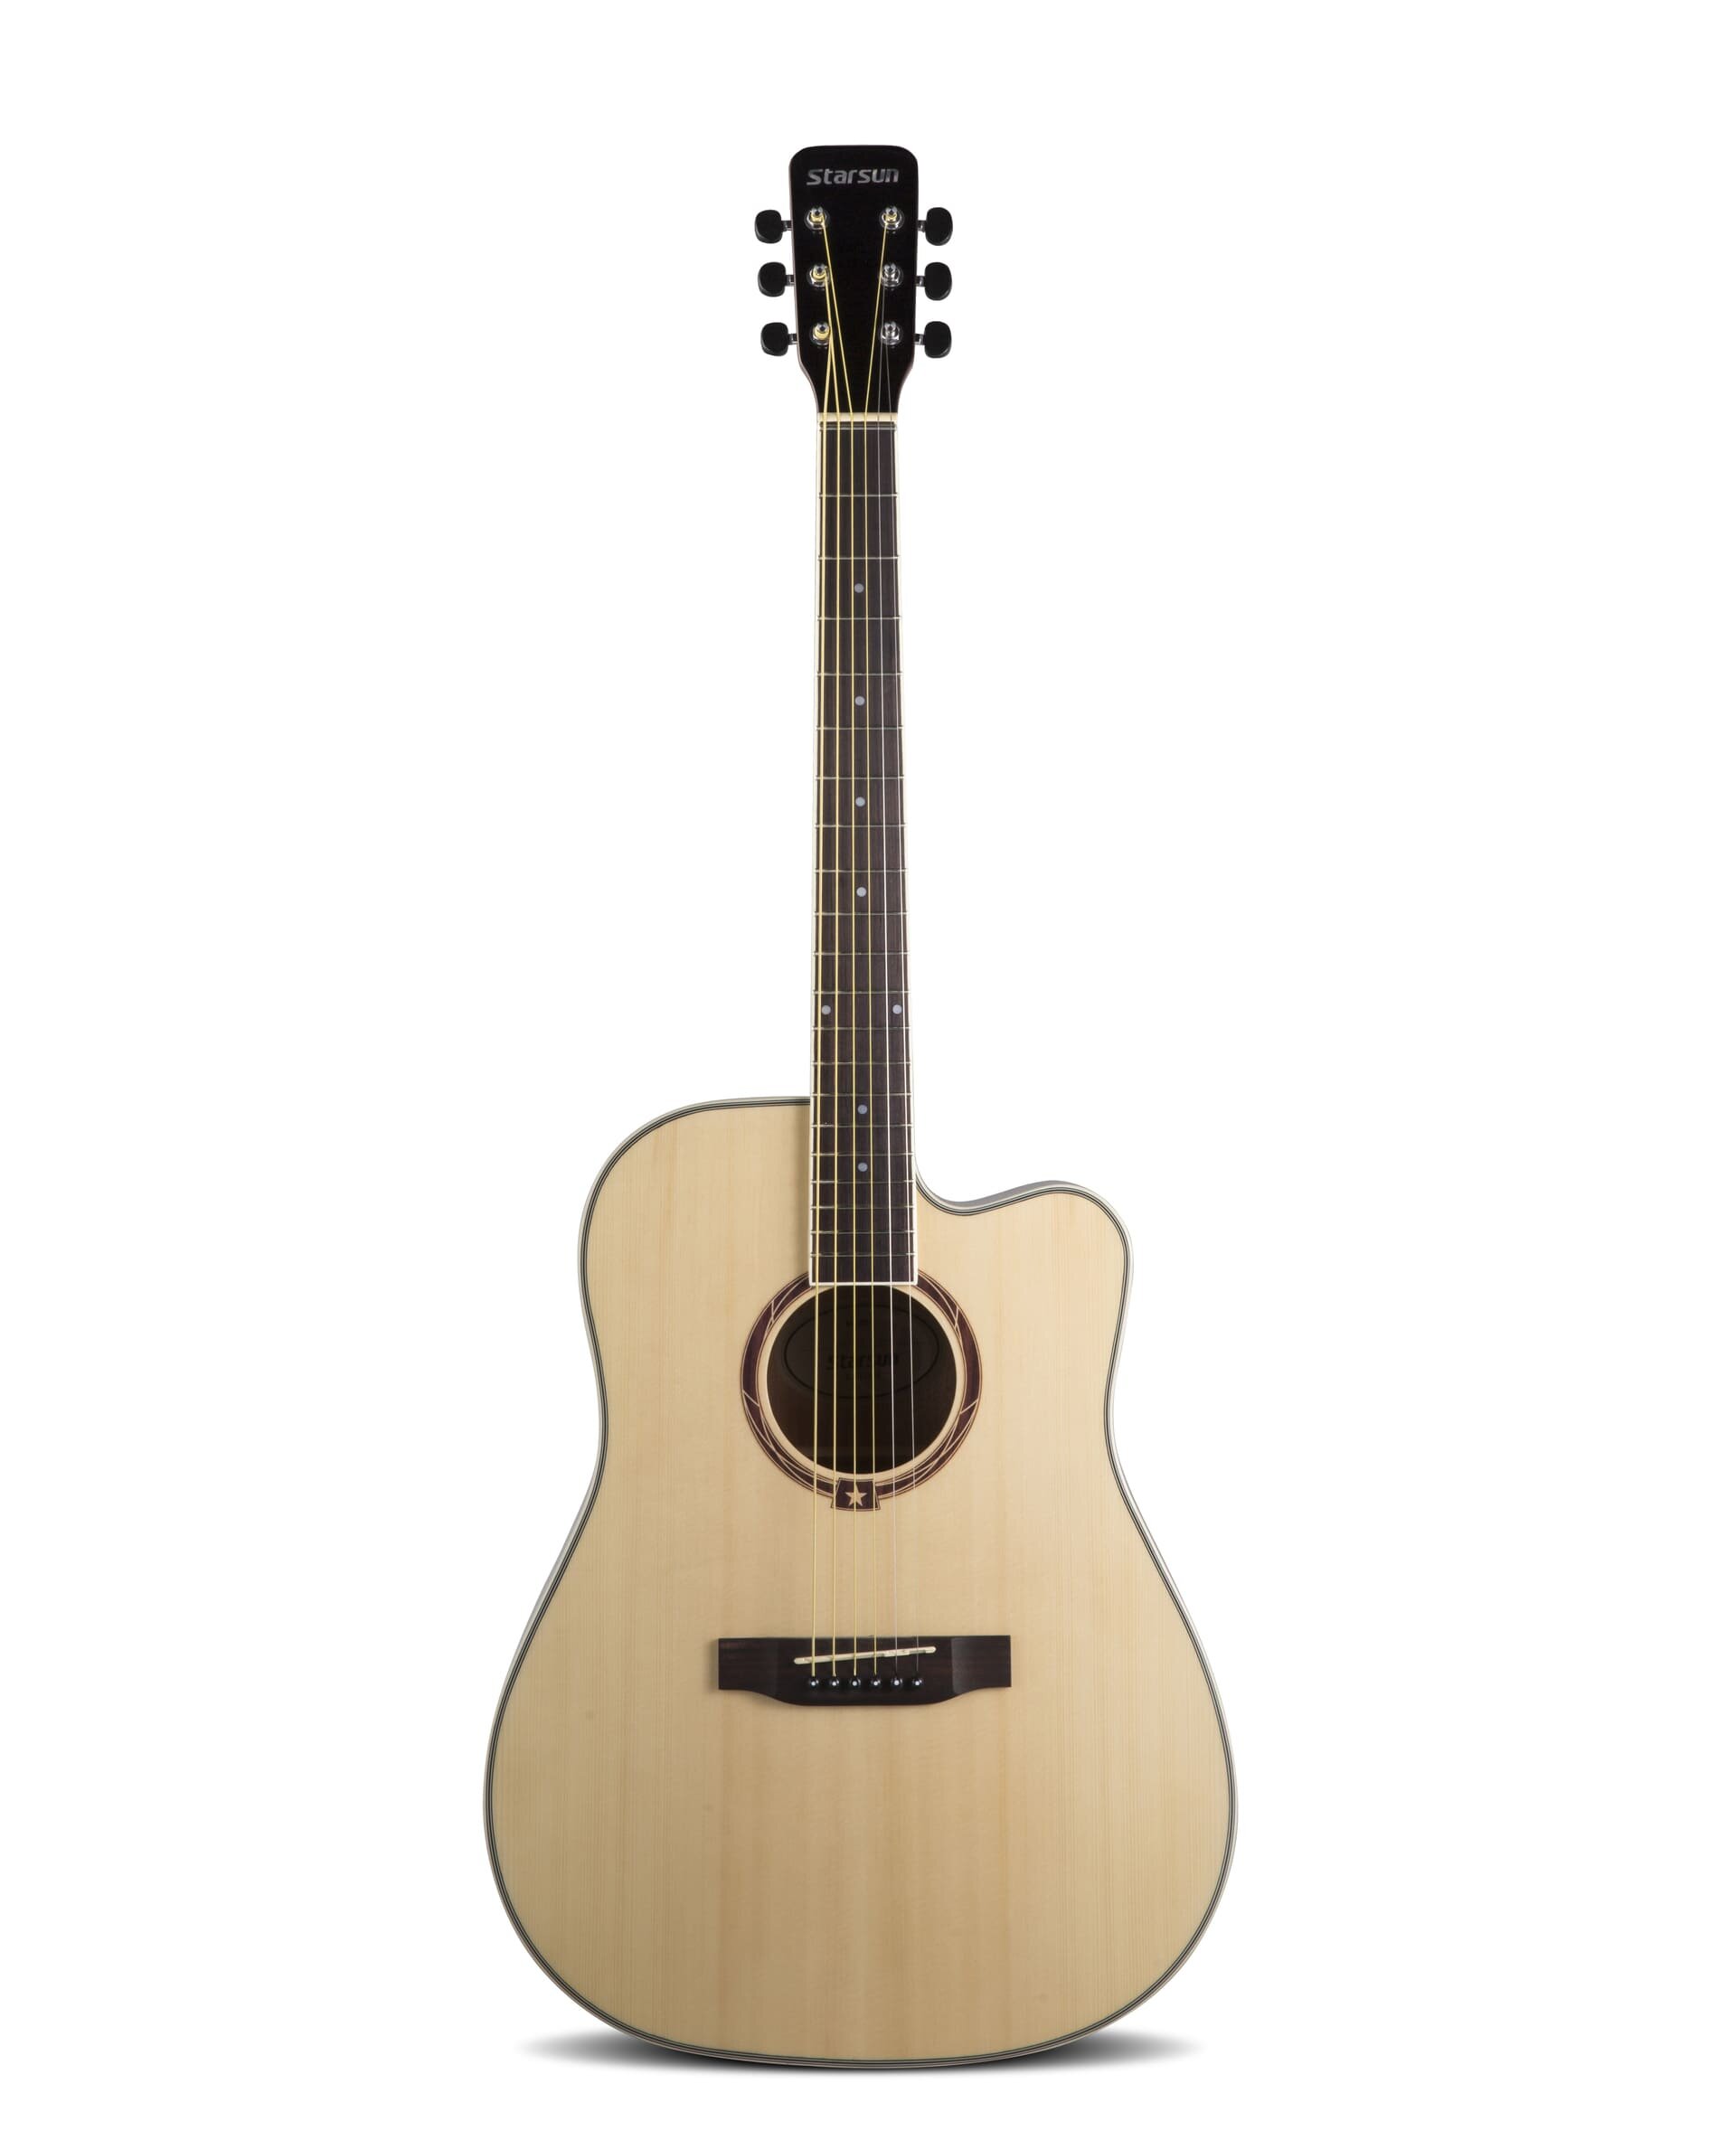 STARSUN DG220c-p Open-Pore акустическая гитара цвет натуральный